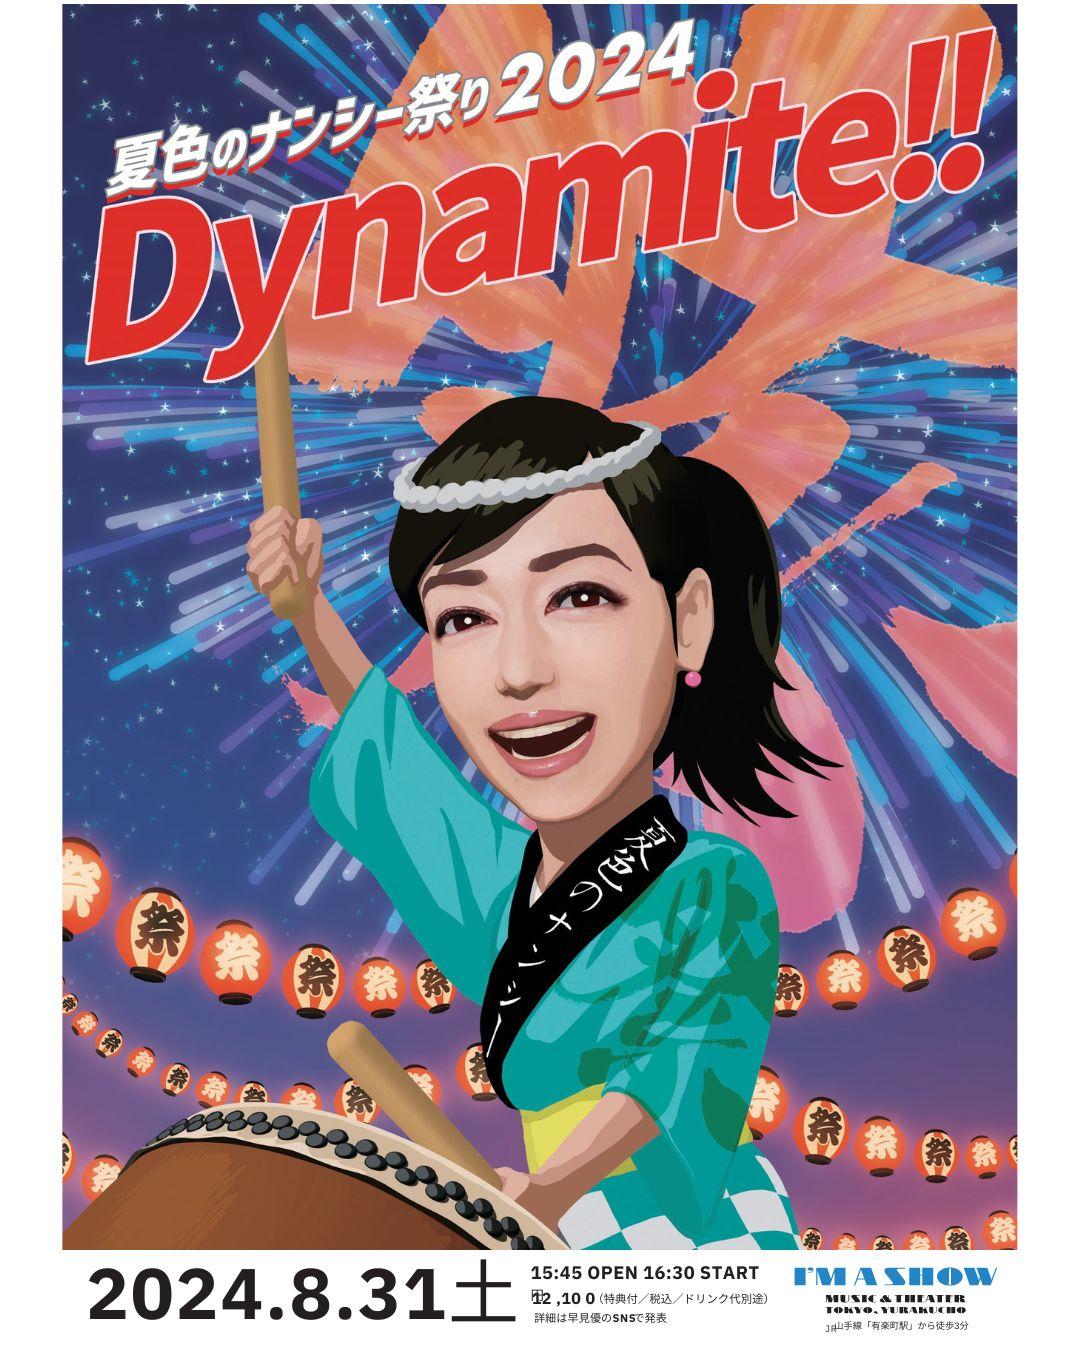 『夏色のナンシー祭り2024 Dynamite!!』FC会員限定受付開始